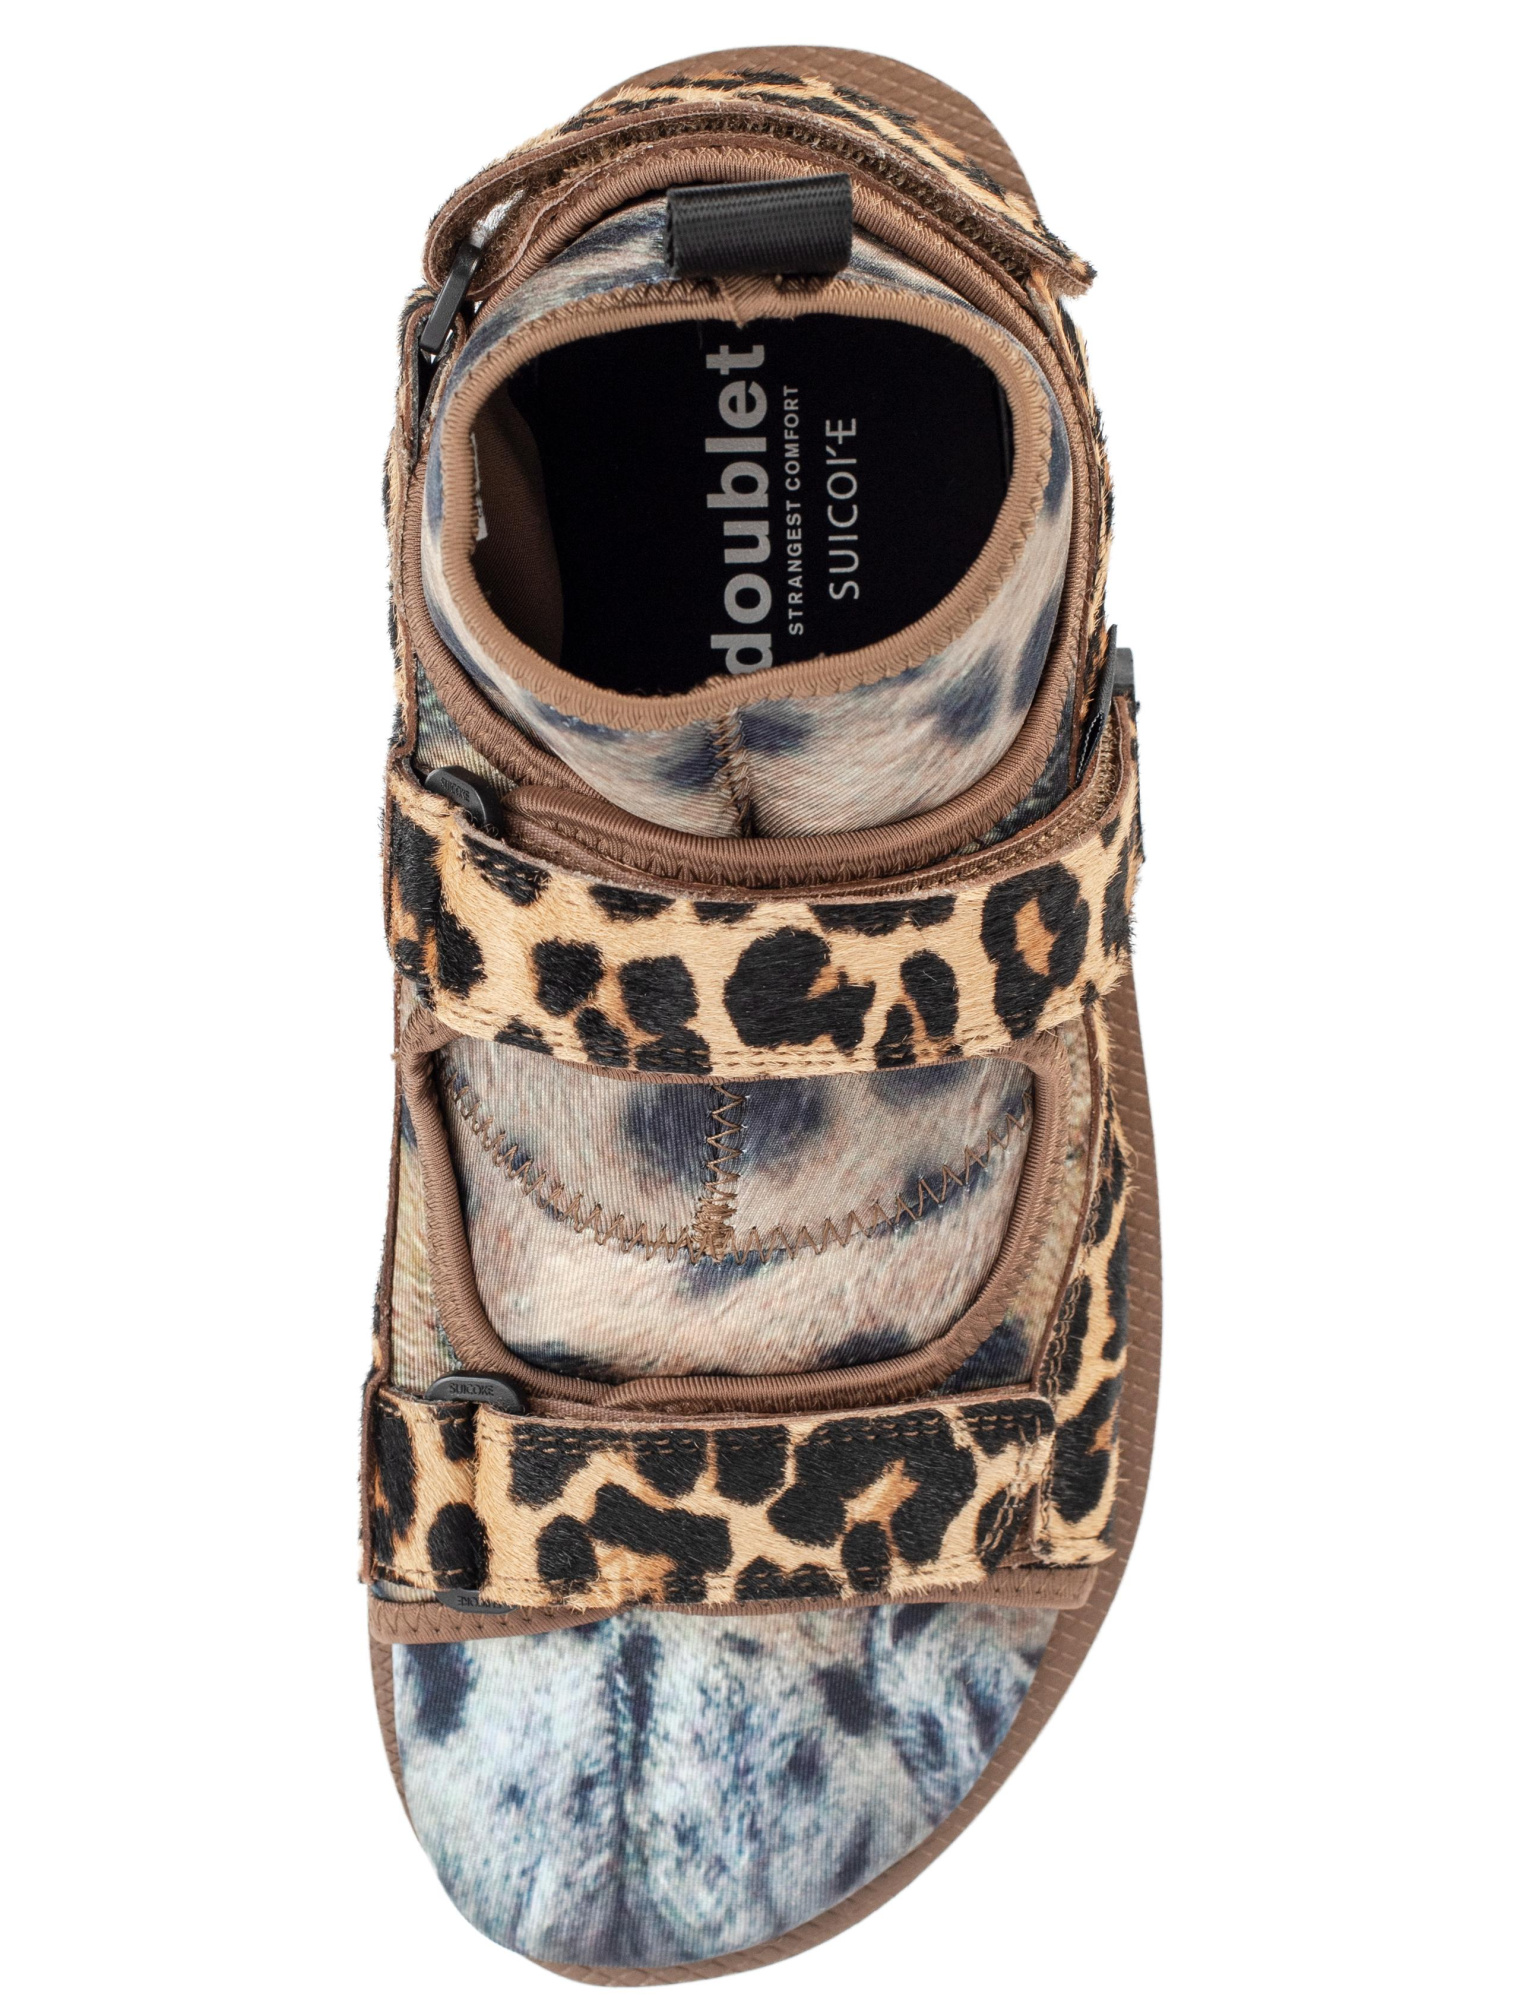 Doublet Doublet x Suicoke Animal foot Leopard Sandals